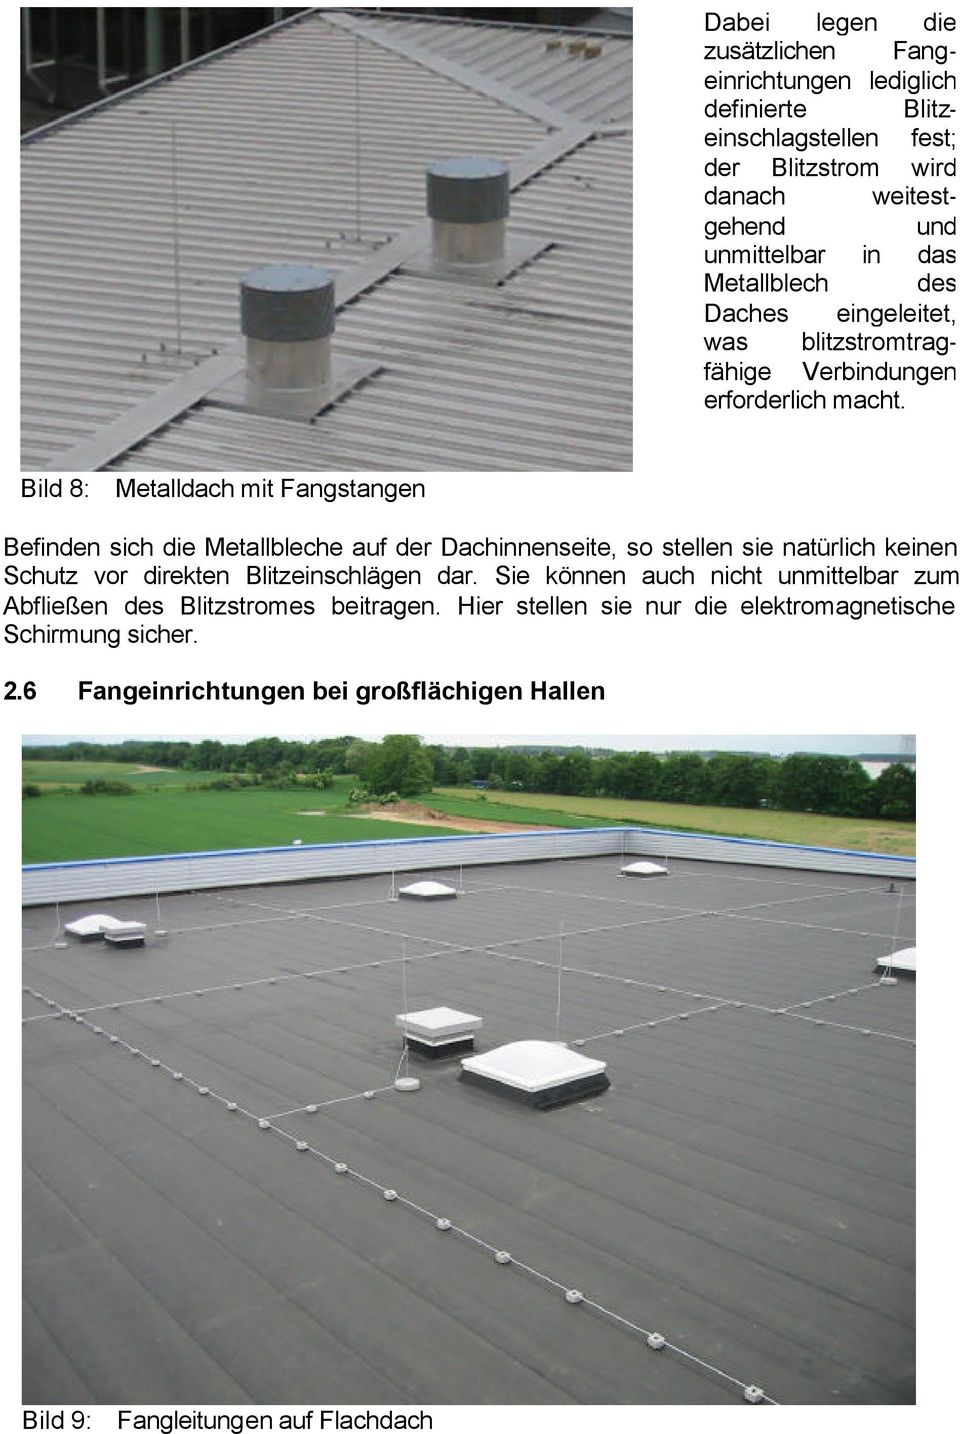 Bild 8: Metalldach mit Fangstangen Befinden sich die Metallbleche auf der Dachinnenseite, so stellen sie natürlich keinen Schutz vor direkten Blitzeinschlägen